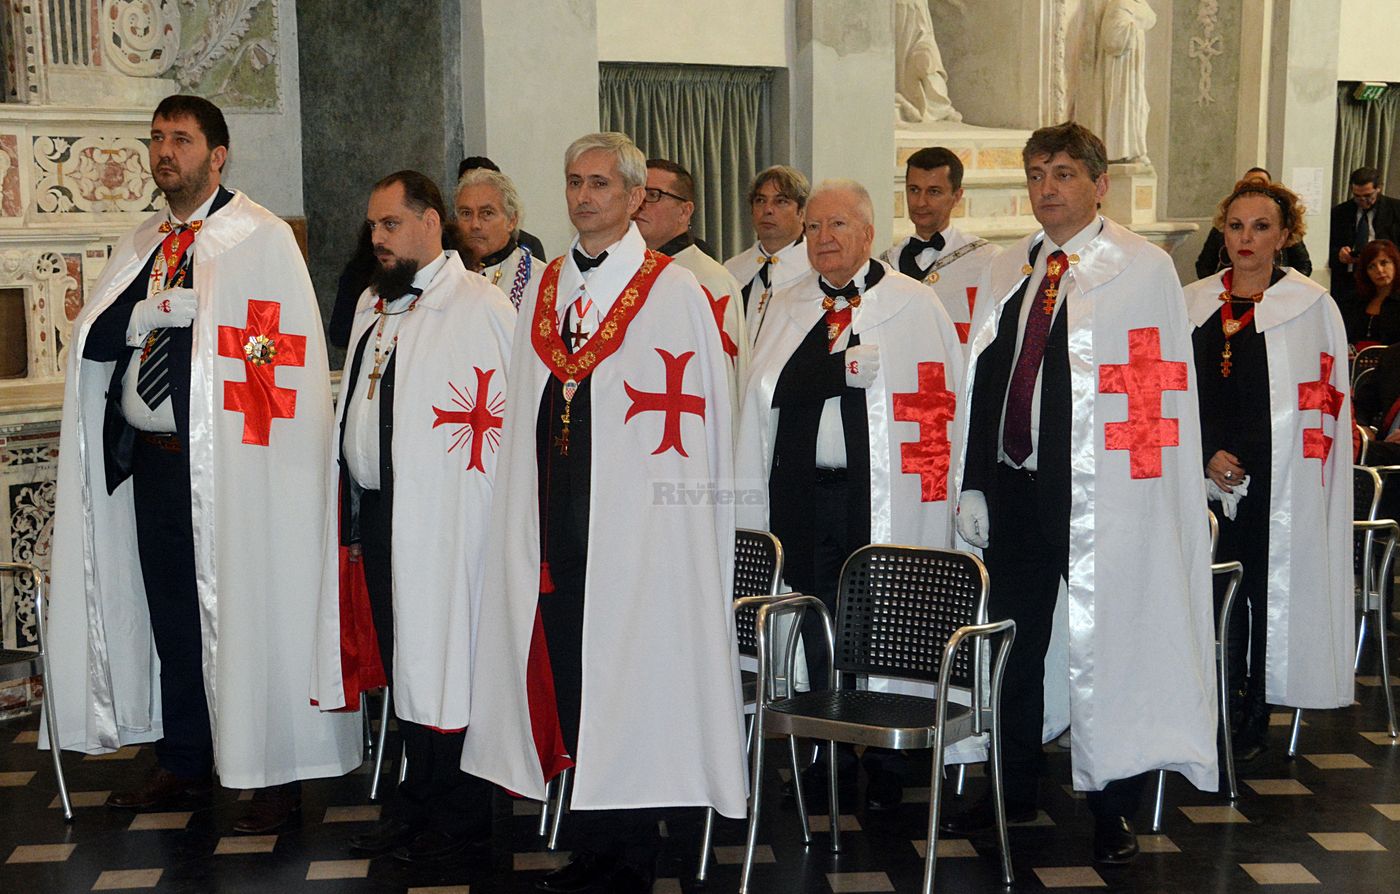 Cavalieri Templari ex chiesa San Francesco Ventimiglia 1 dicembre 2018_46